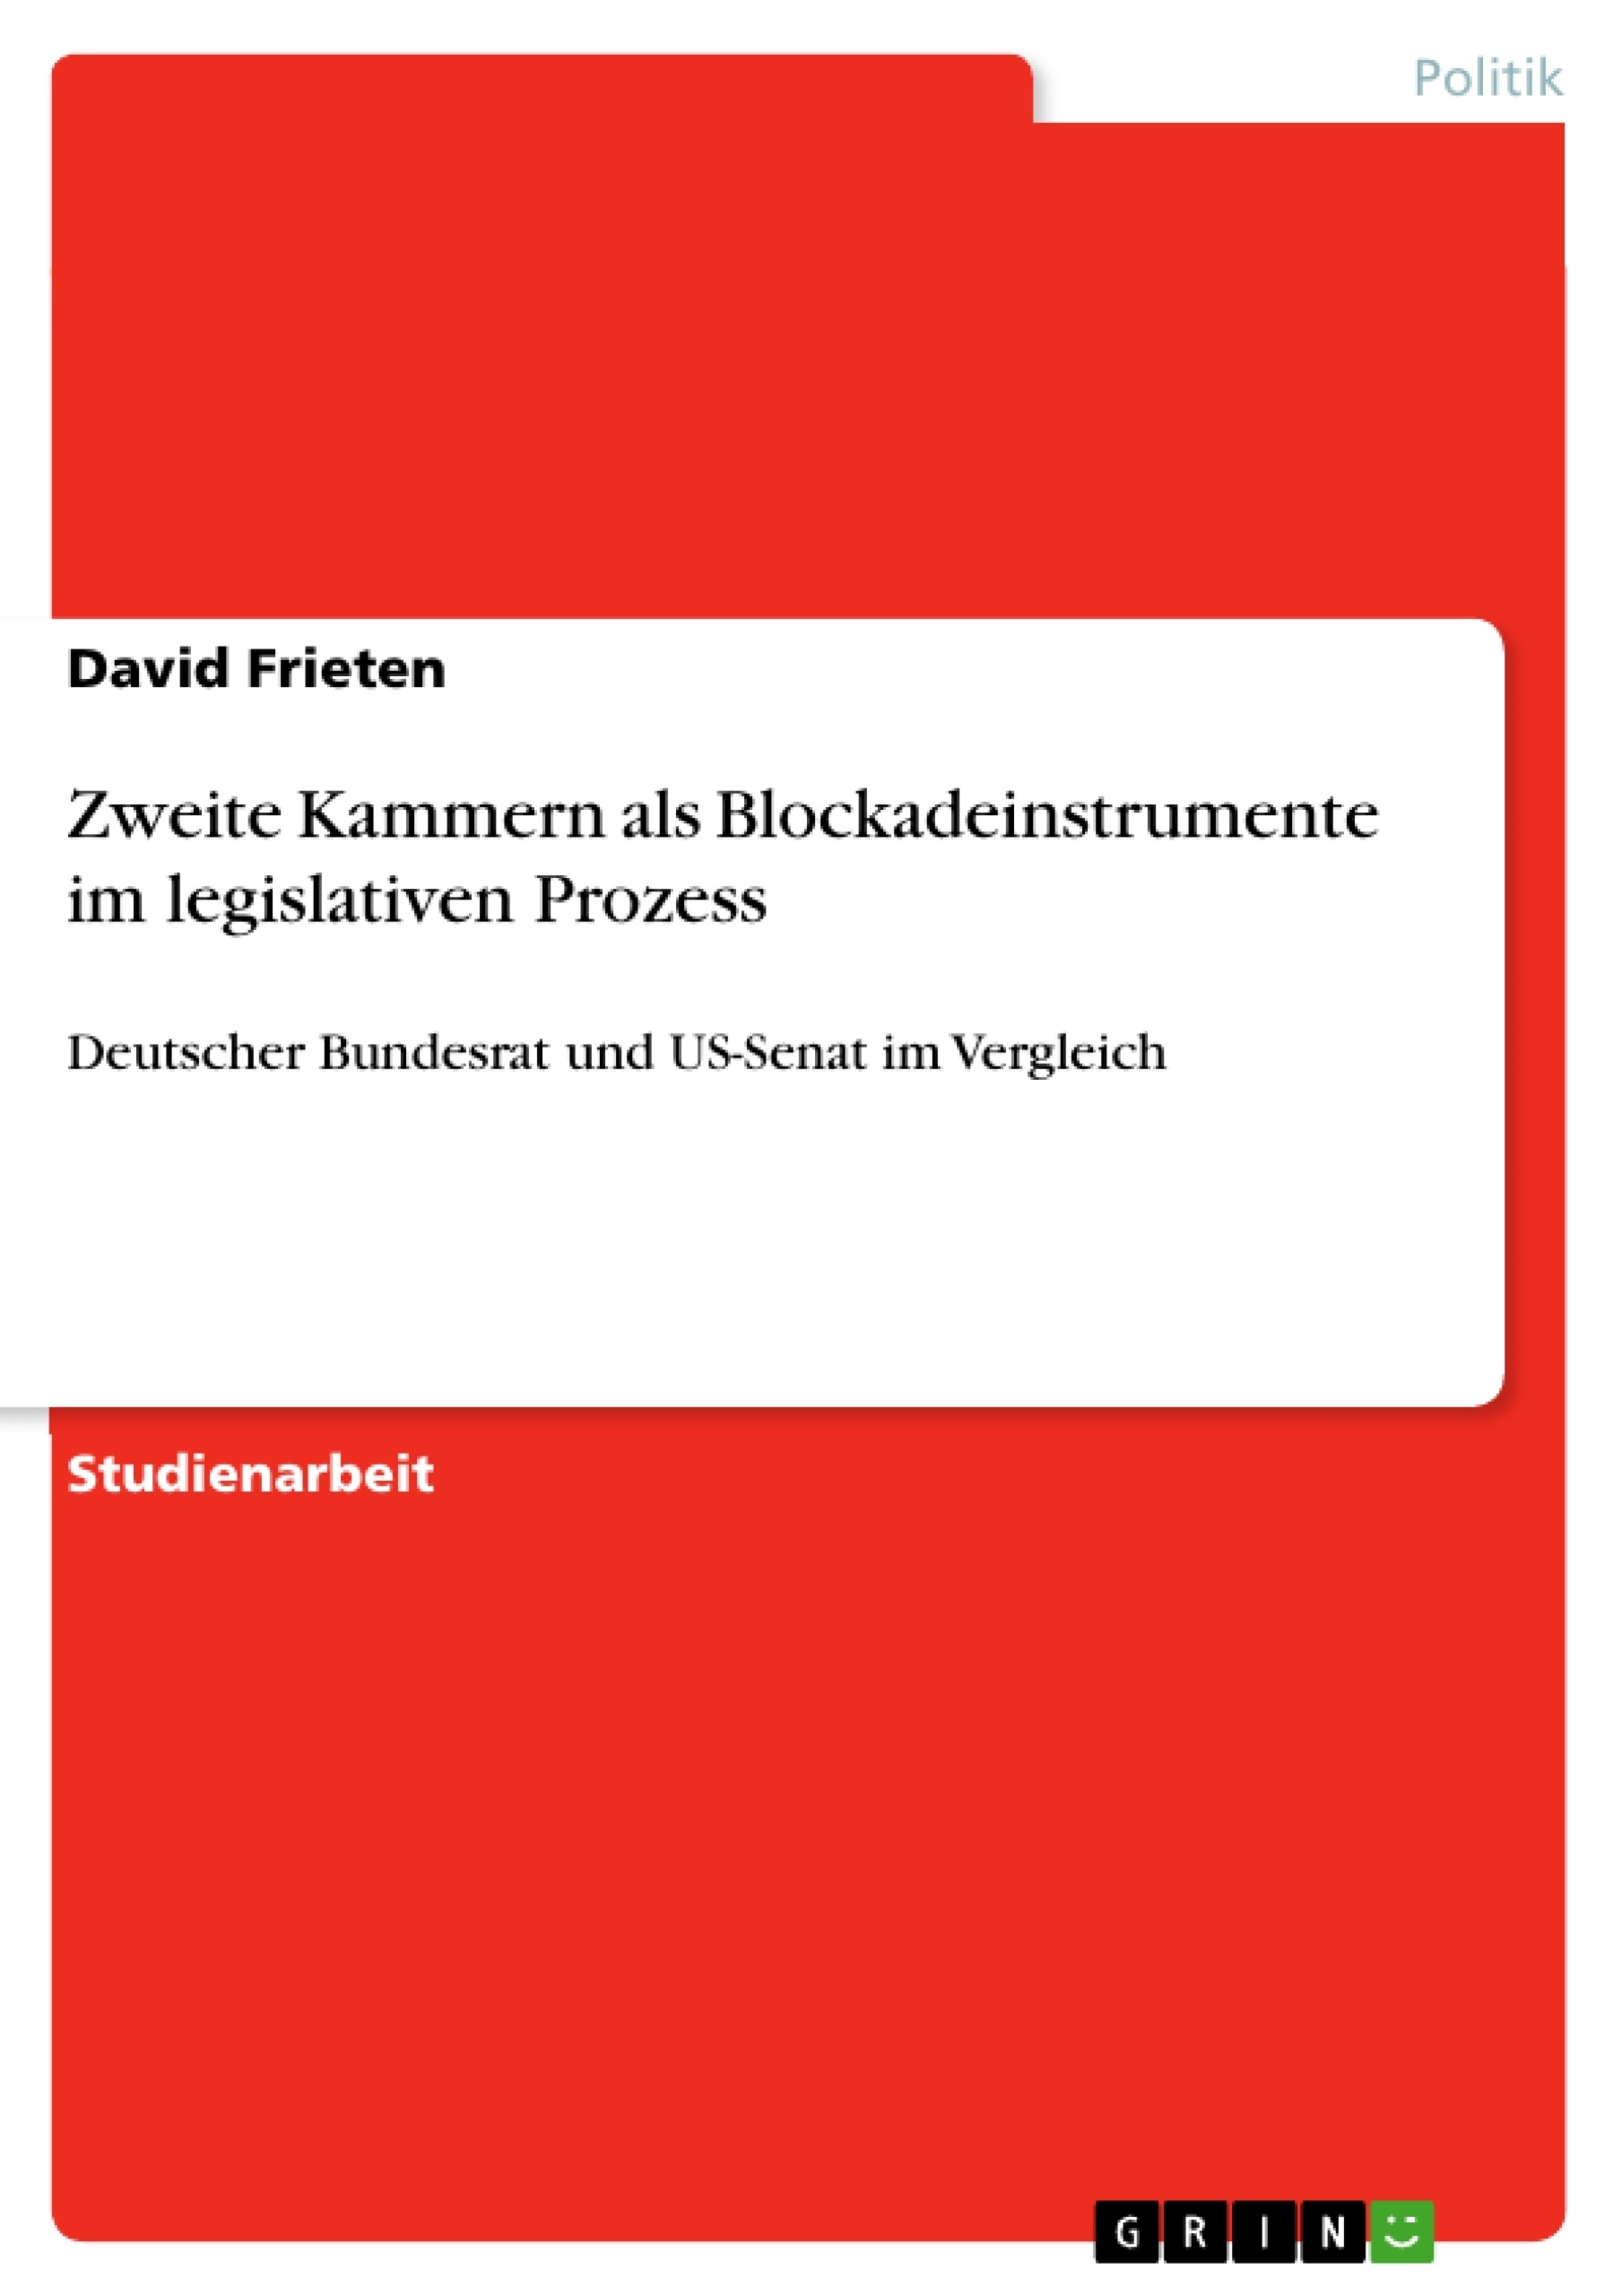 Title: Zweite Kammern als Blockadeinstrumente im legislativen Prozess